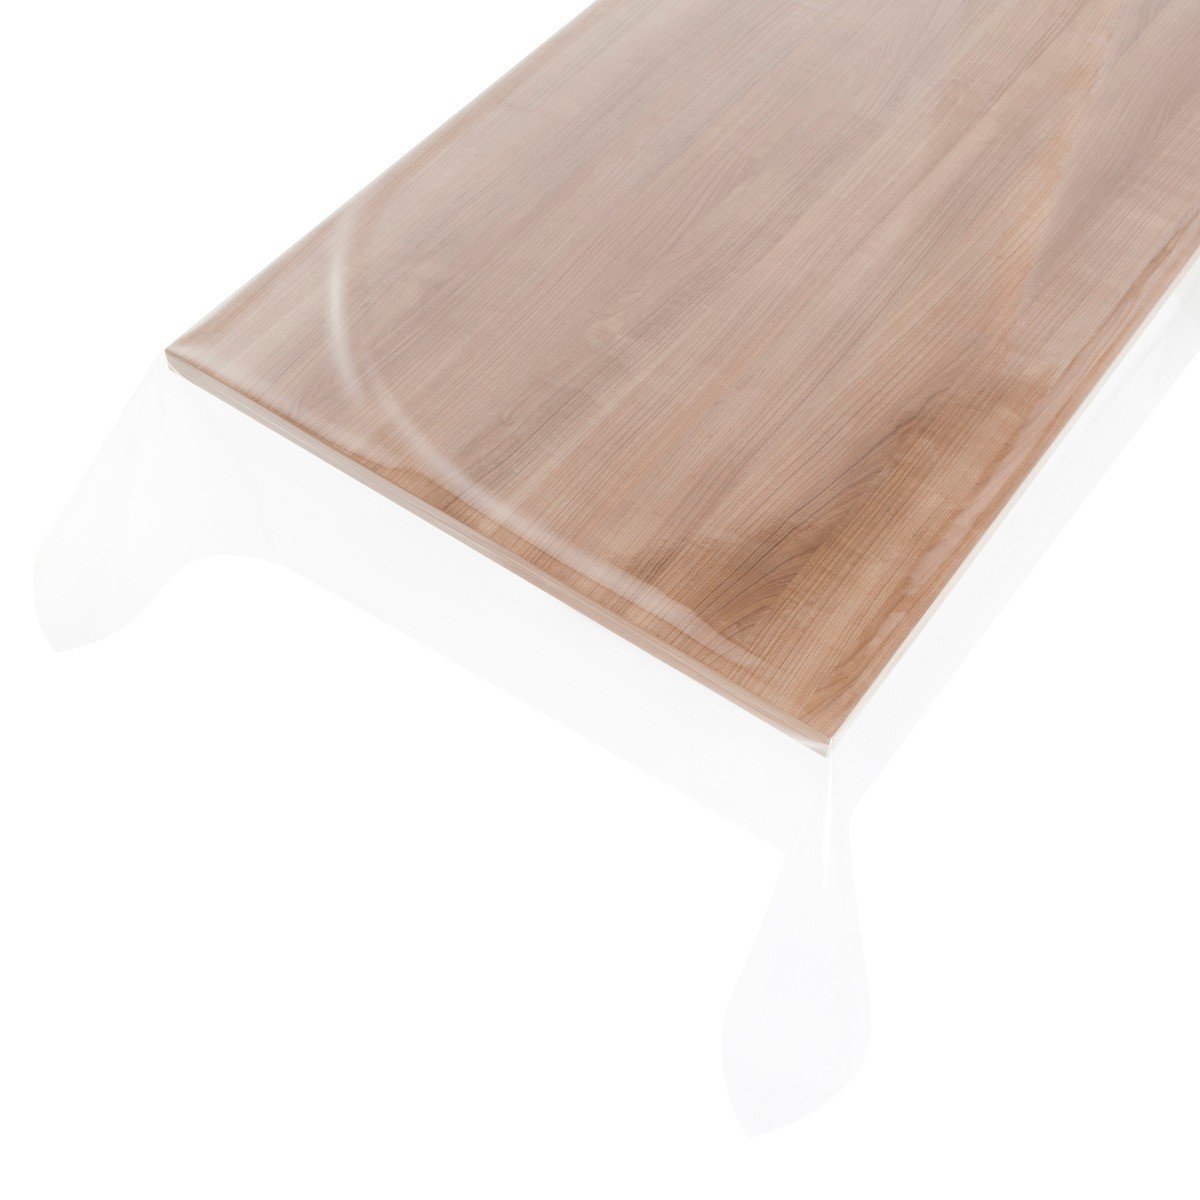 Doorzichtig tafelzeil - Driehoek 170x170x170cm (0,5mm)